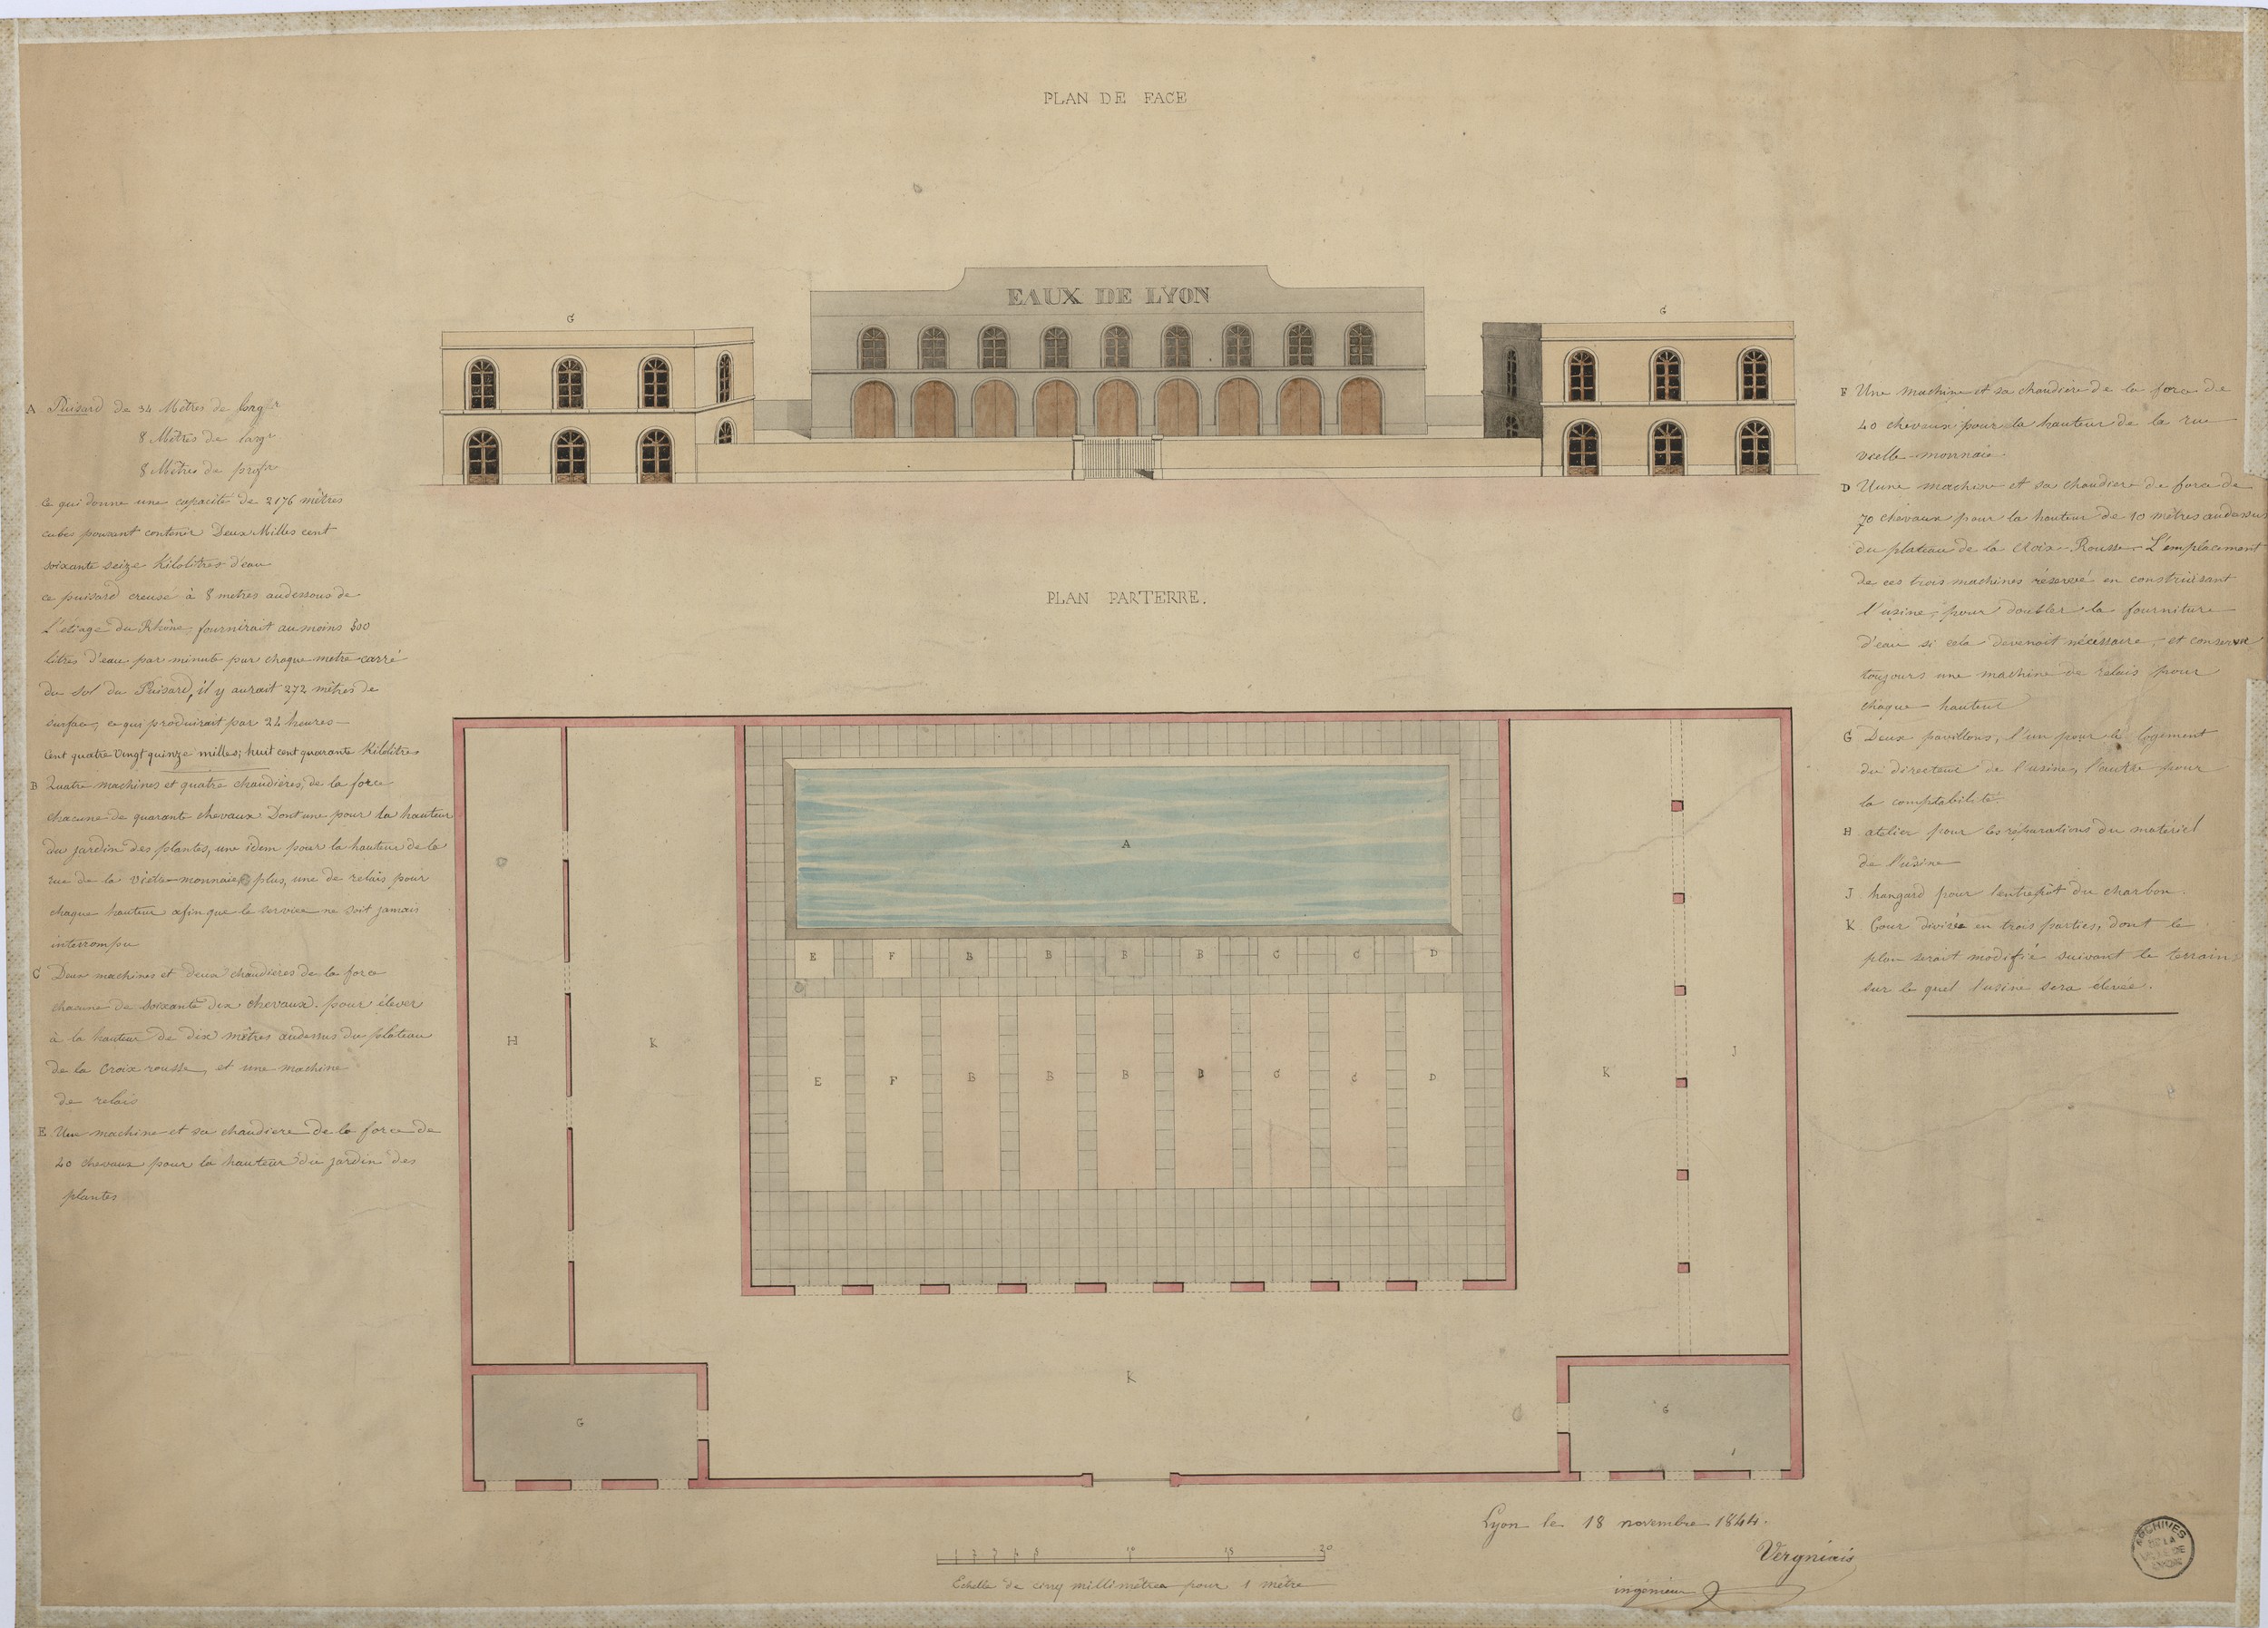 Projet d'une usine des eaux publiques à Lyon, plan et élévation : dessin plume et lavis couleur par Vergniais (1844, cote : 3S/253)